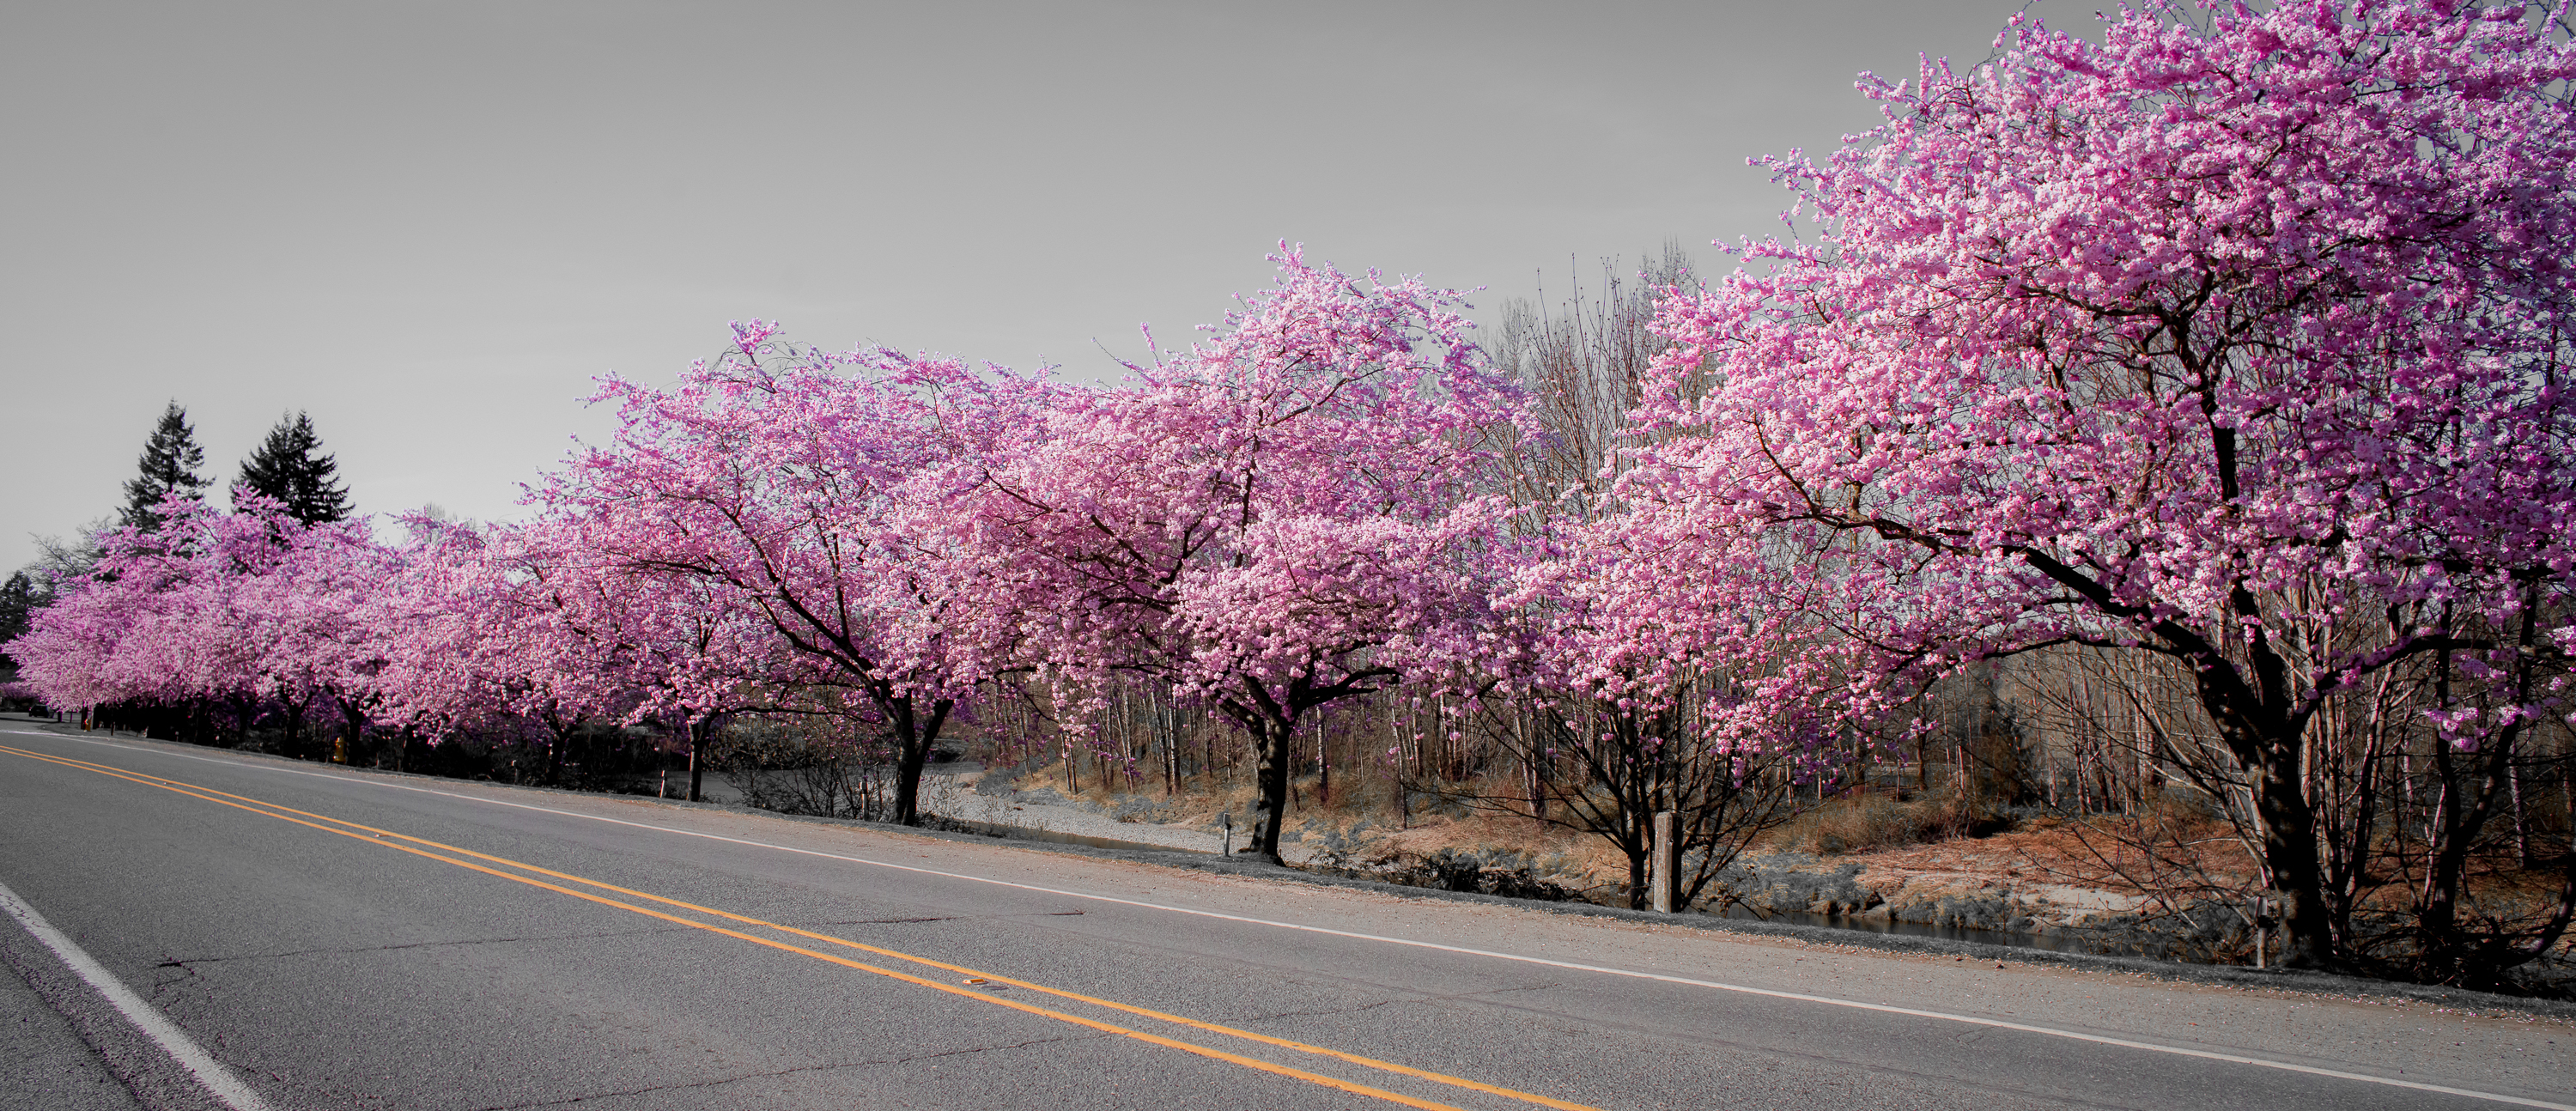 Cherry blossom festivals unfurl fragrant tidings for spring